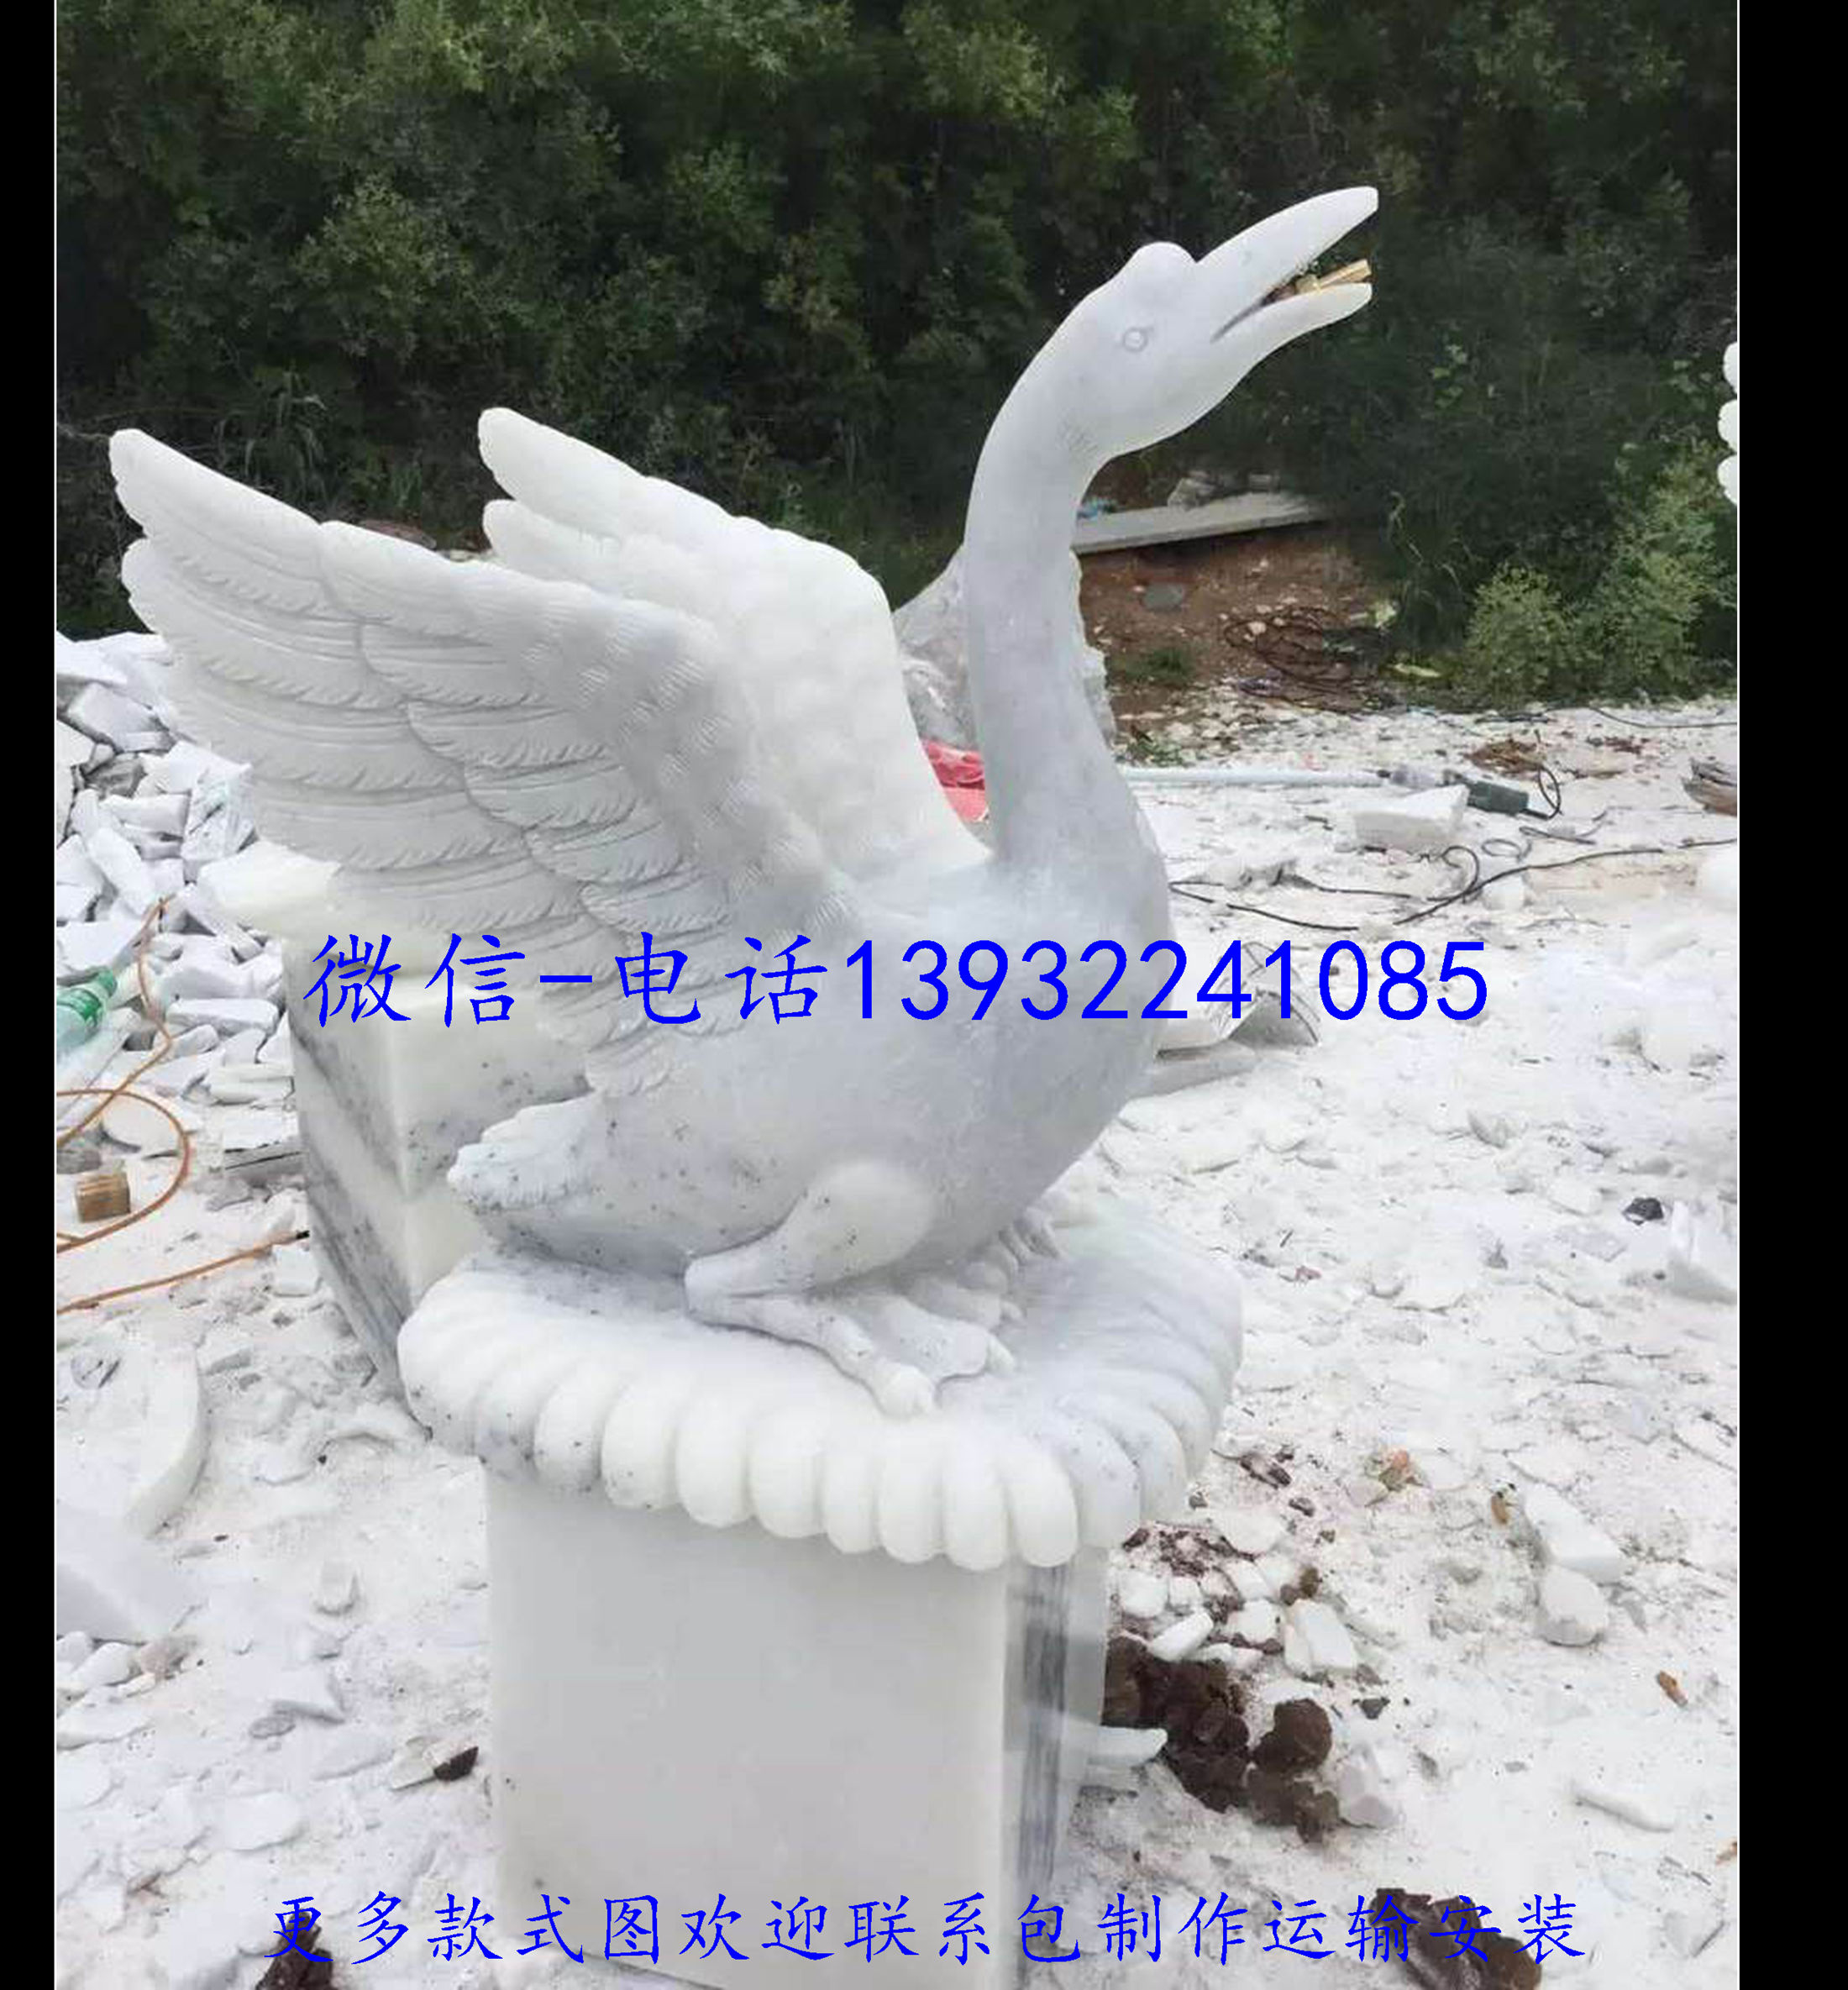 天然汉白玉材质天鹅喷水雕像石雕